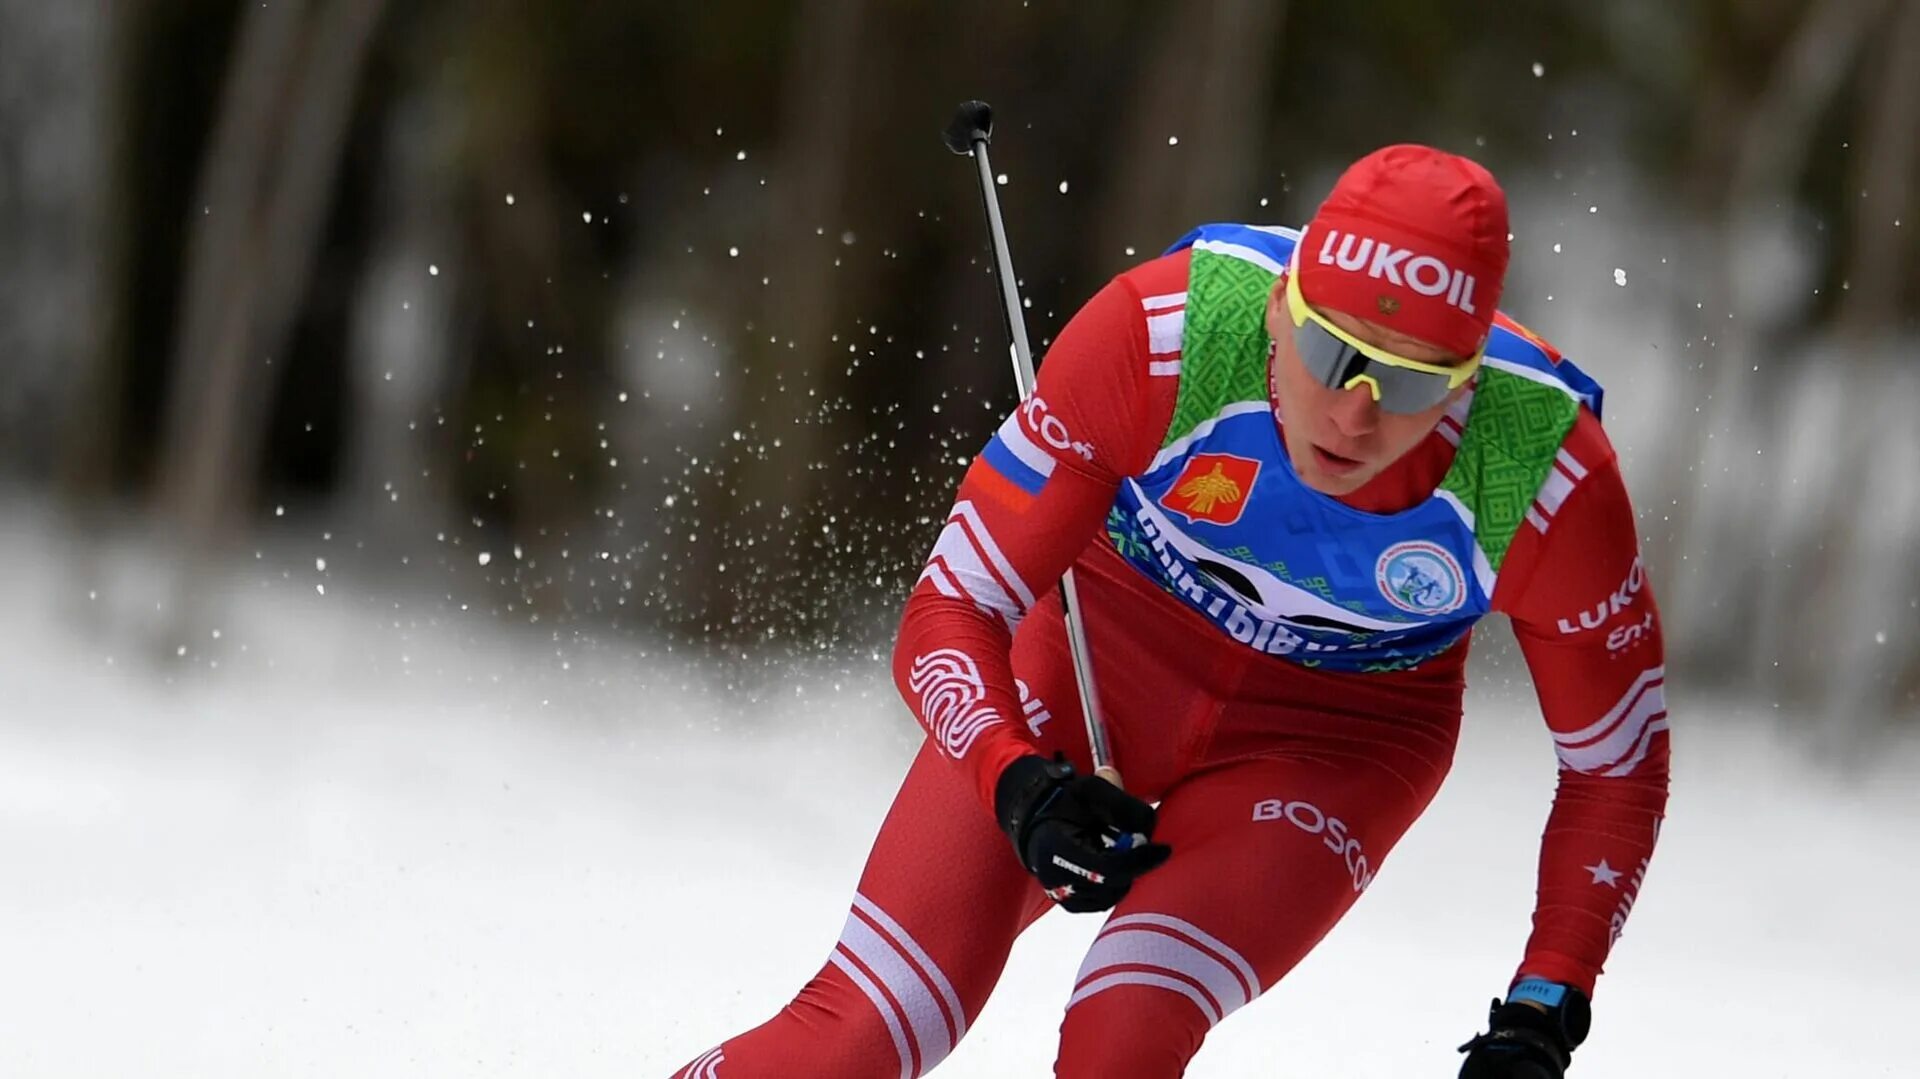 Лыжные гонки сегодня мужчины 10 км. Эндрю Масгрейв. Большунов 2022 лыжи. Эндрю Масгрейв - участник трёх Олимпийских игр по лыжным гонкам.